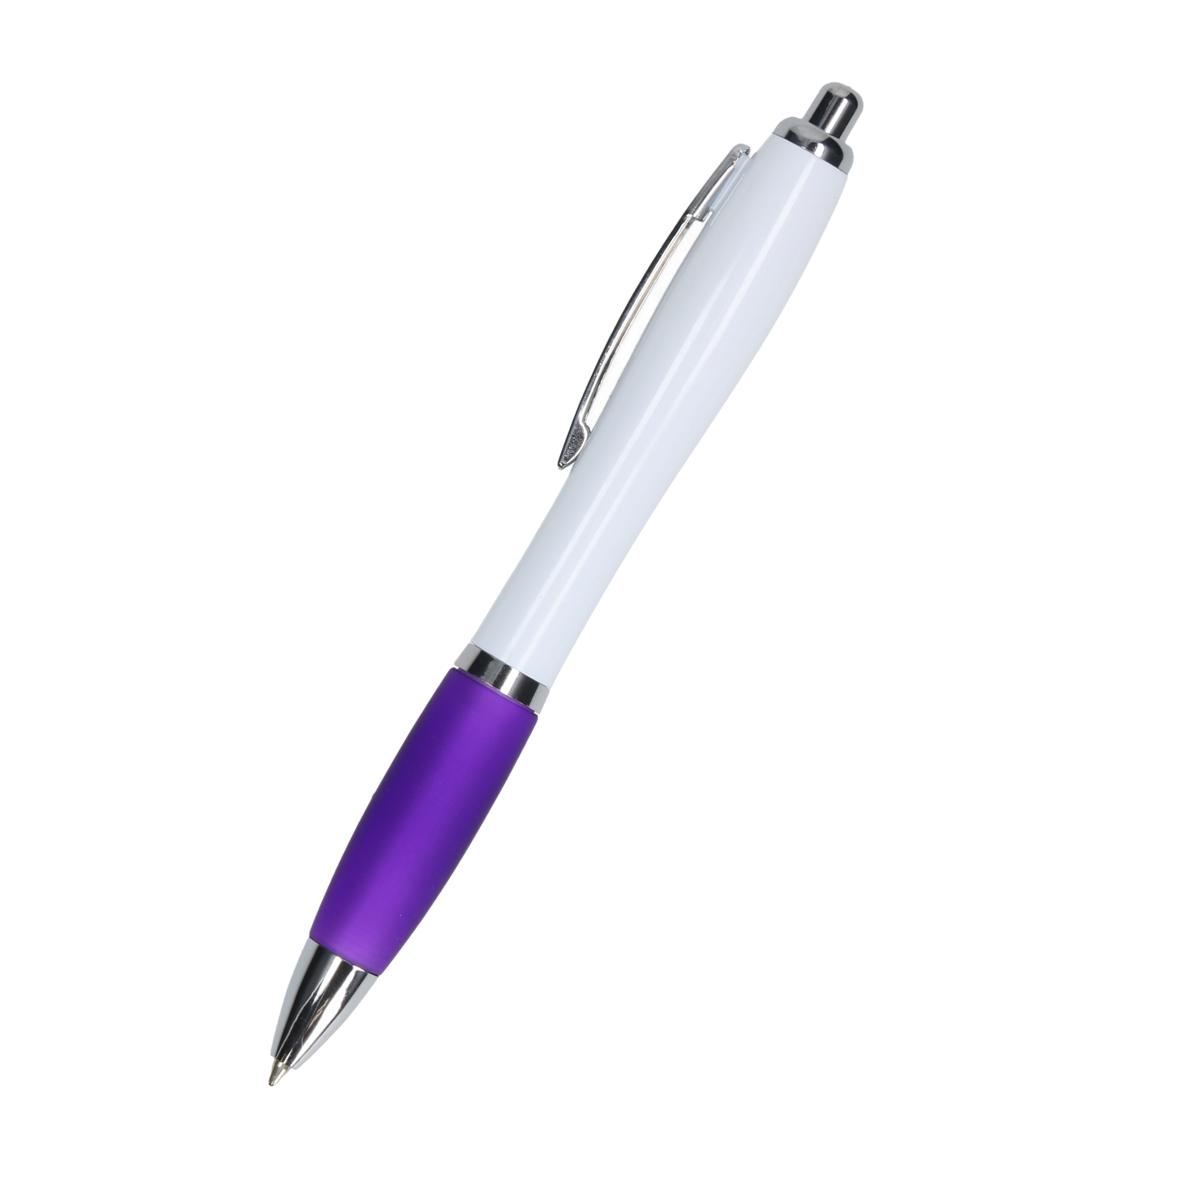 Bredgar's blue retractable ballpoint pen with non-slip grip - Hartpury